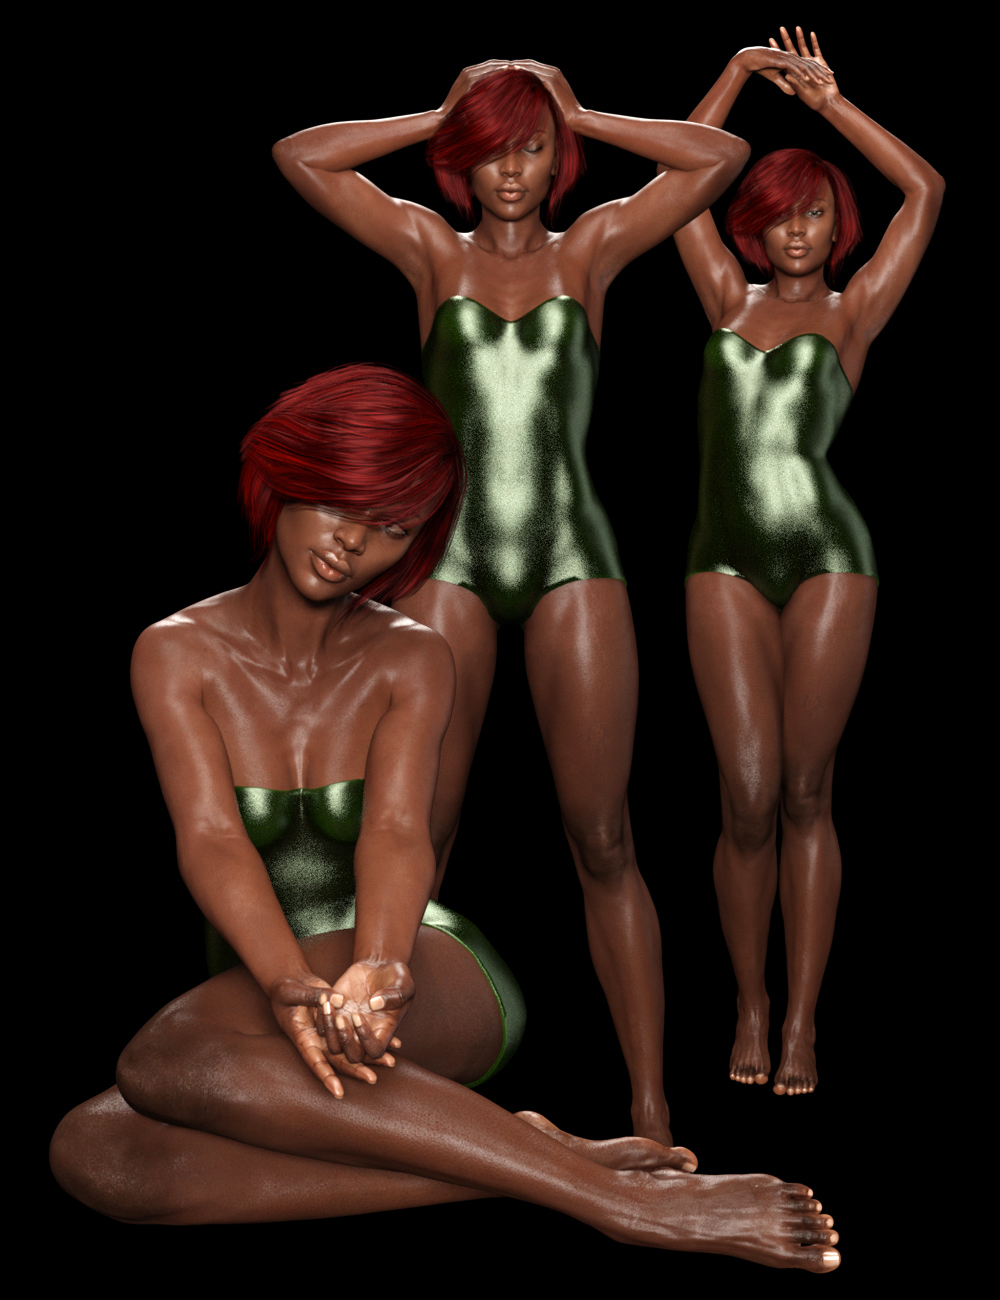 Shimuzu's Evah Poses for Monique 8 and Victoria 8 by: Shimuzu, 3D Models by Daz 3D